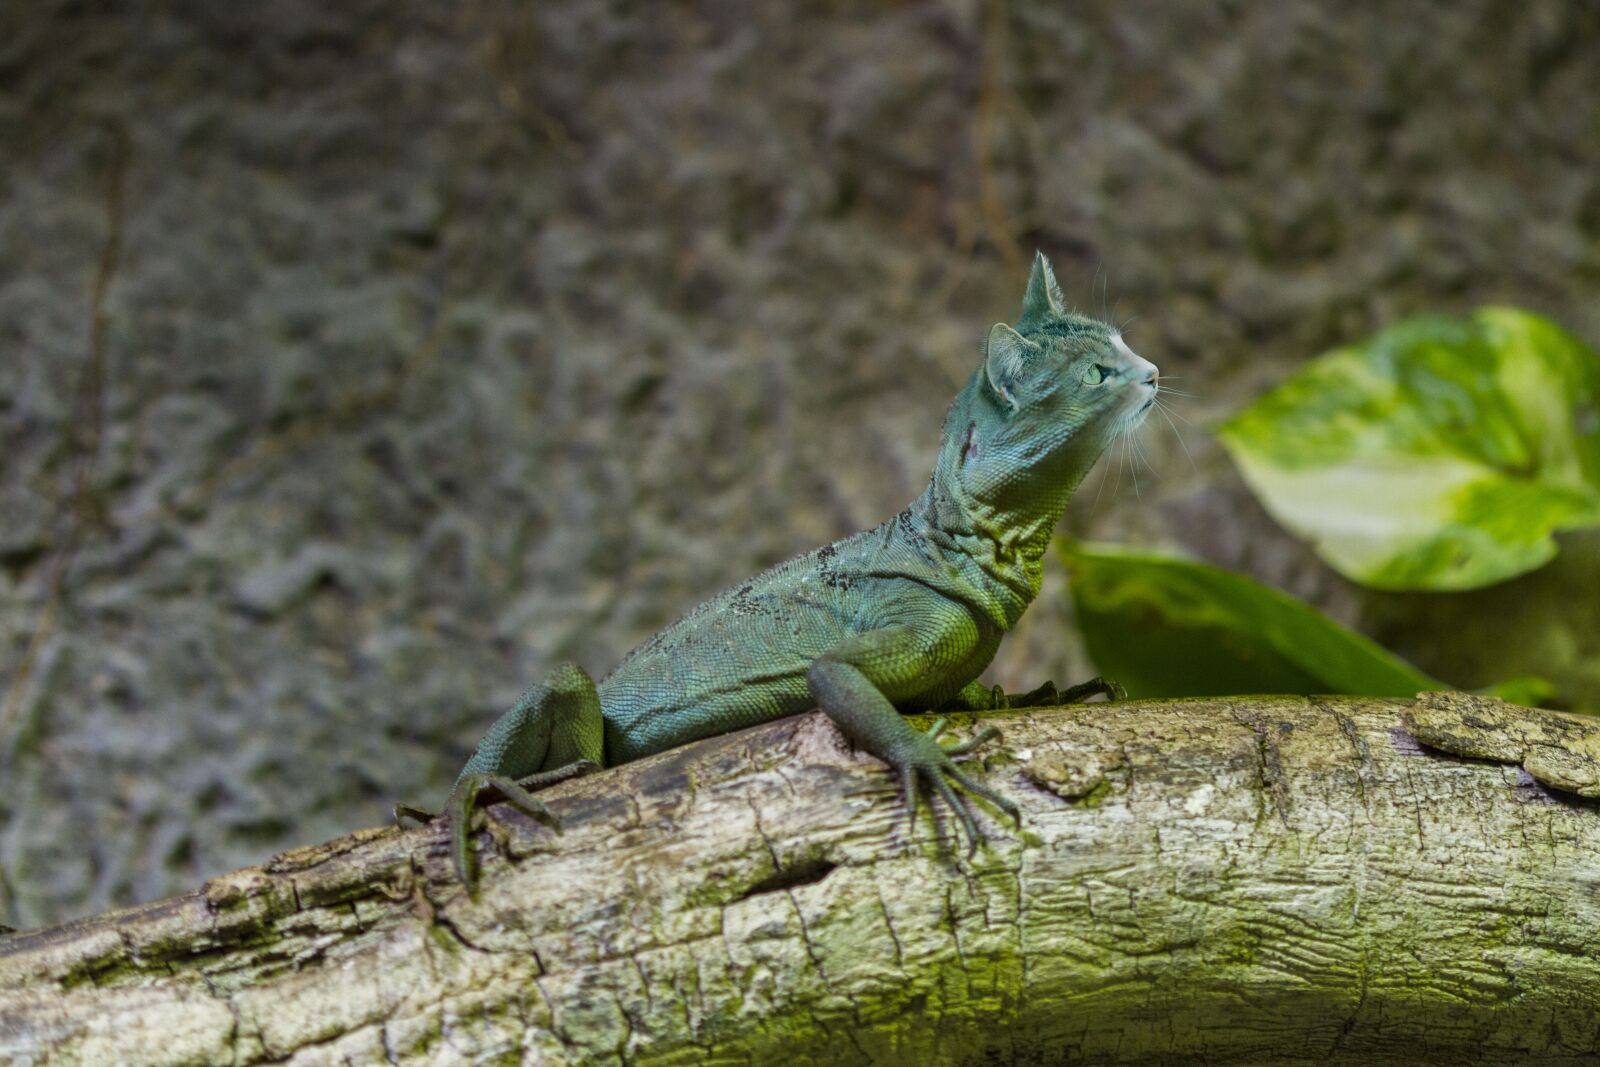 Canon EOS 7D sample photo. Animal hybrid, lizard, basilisk photography